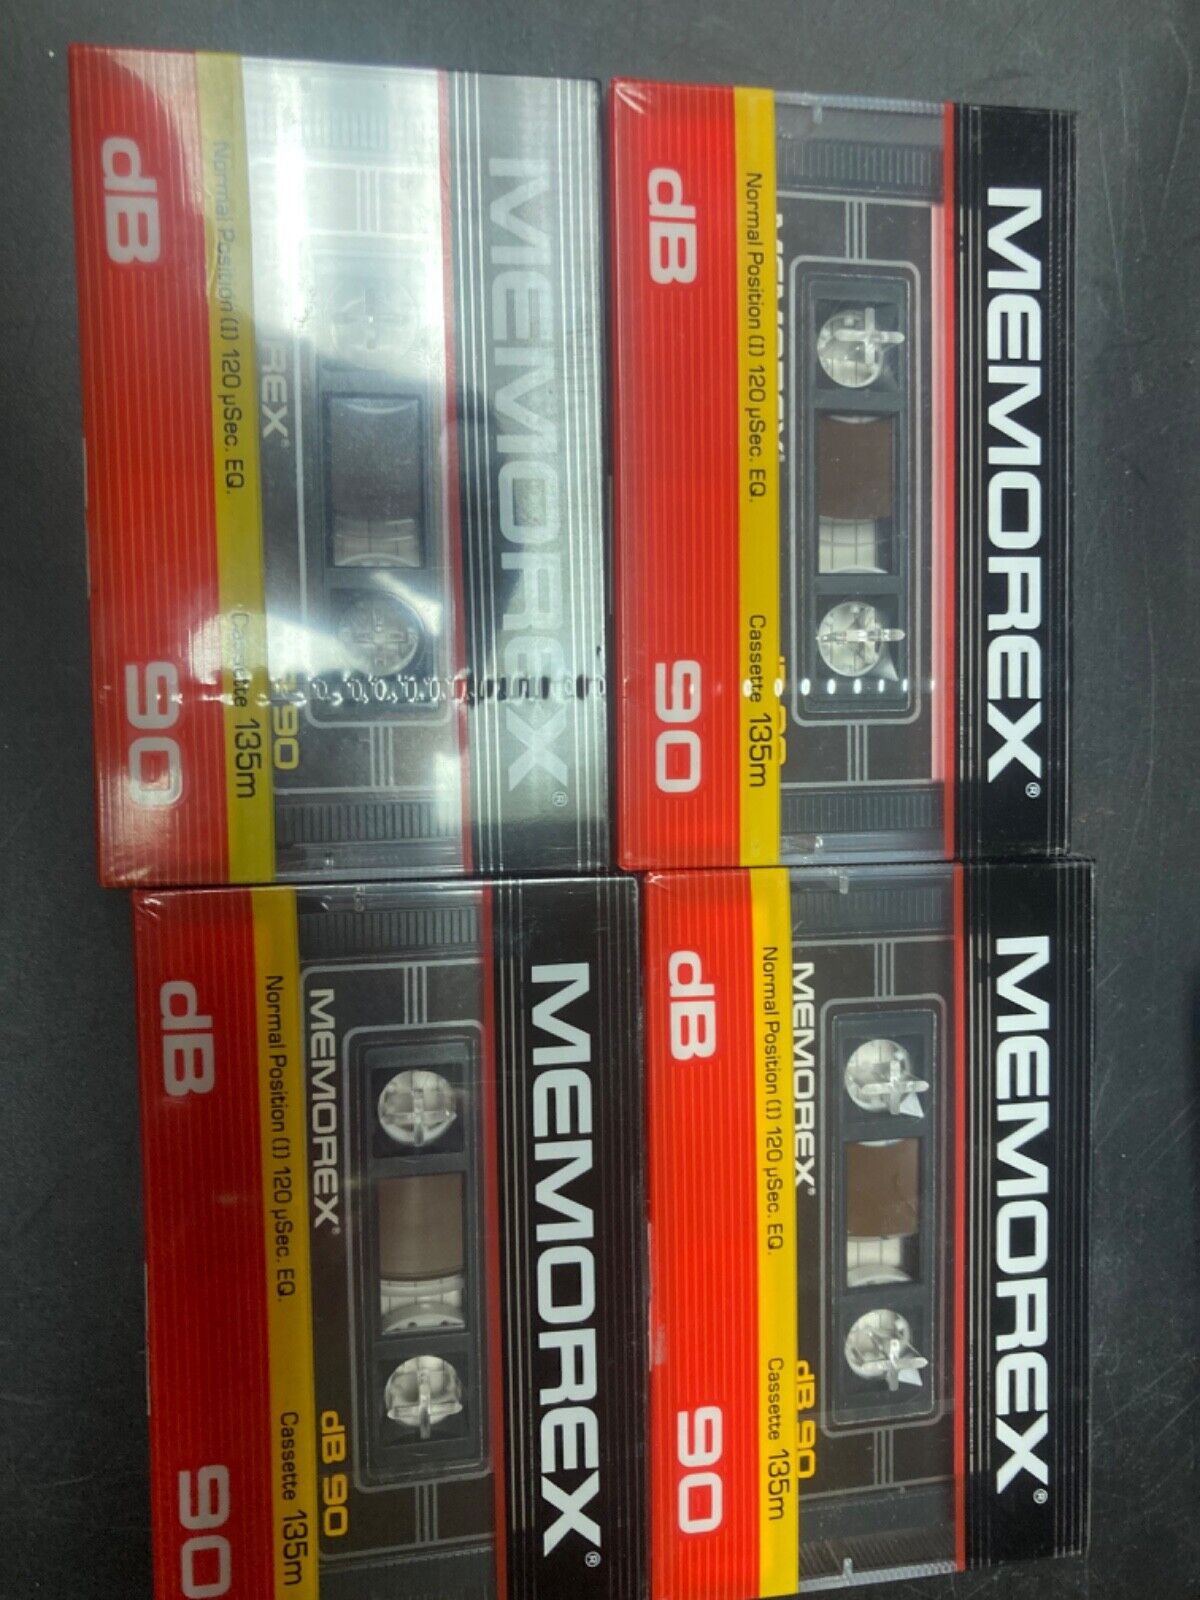 4 blank cassette tapes- Memorex